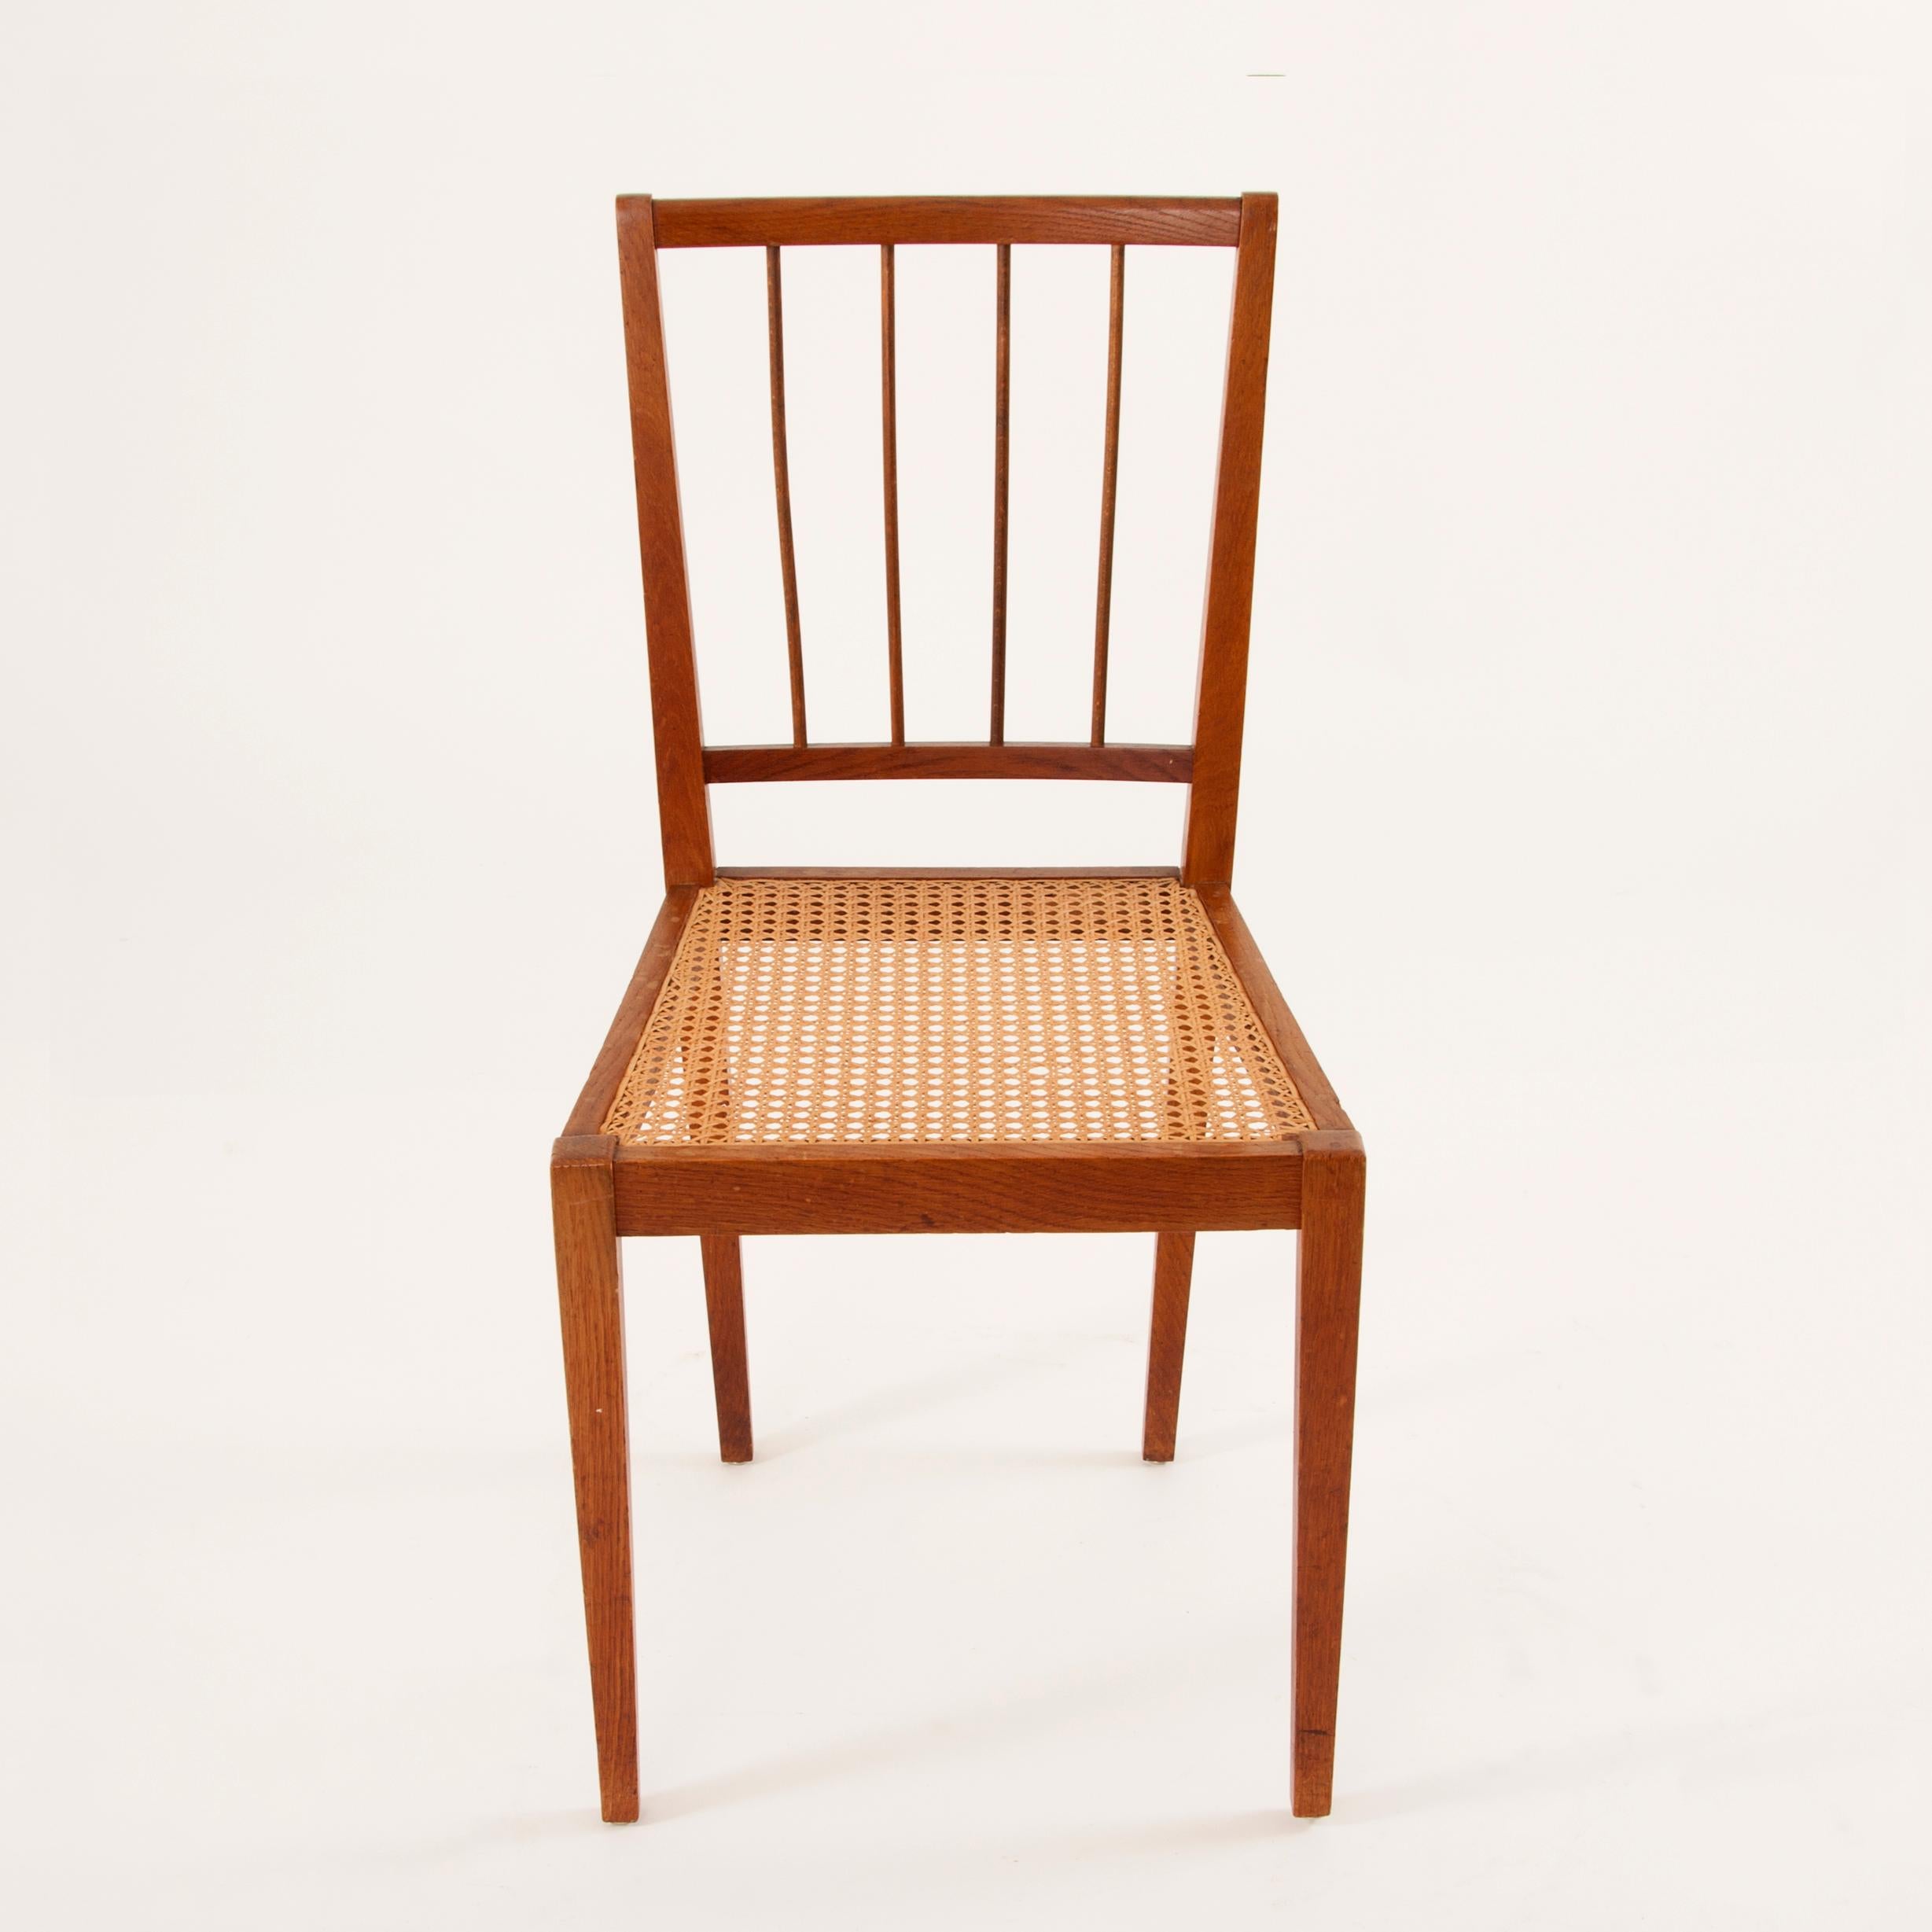 Zwei schöne österreichische Holzstühle mit geflochtenem Rohrsitz aus den 1930er Jahren. Entworfen von Julius Jirasek für die Werkstätte Karl Hagenauer. Die Stühle sind restauriert und in ausgezeichnetem Zustand. Zwei Exemplare verfügbar, verkauft